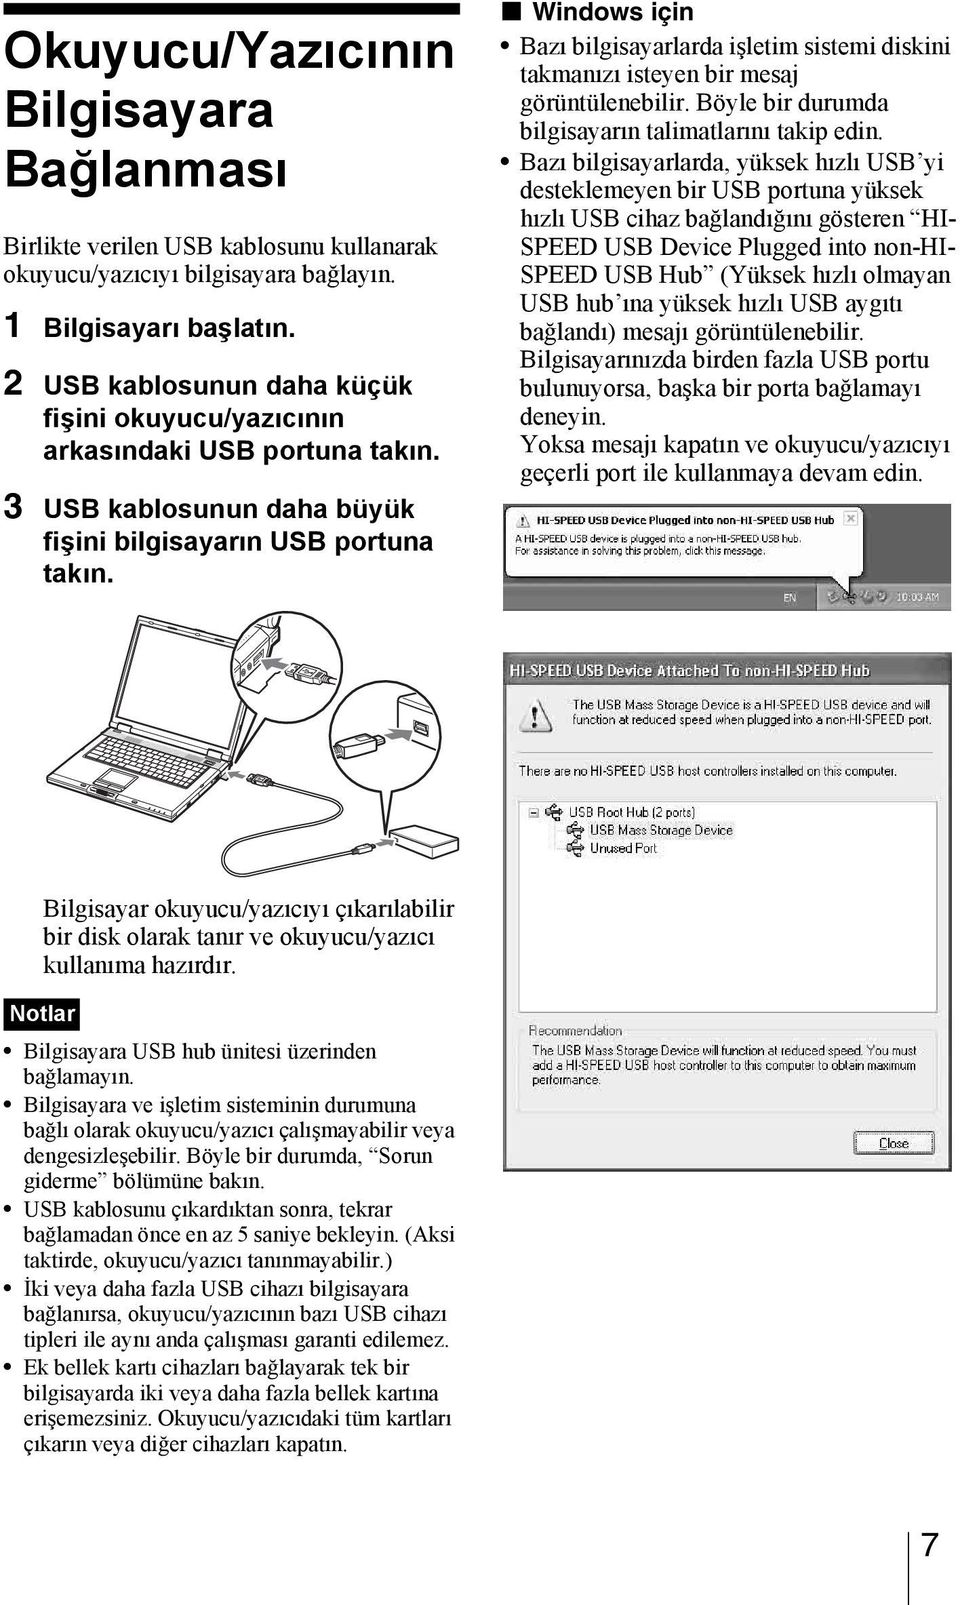 x Windows için Bazı bilgisayarlarda işletim sistemi diskini takmanızı isteyen bir mesaj görüntülenebilir. Böyle bir durumda bilgisayarın talimatlarını takip edin.